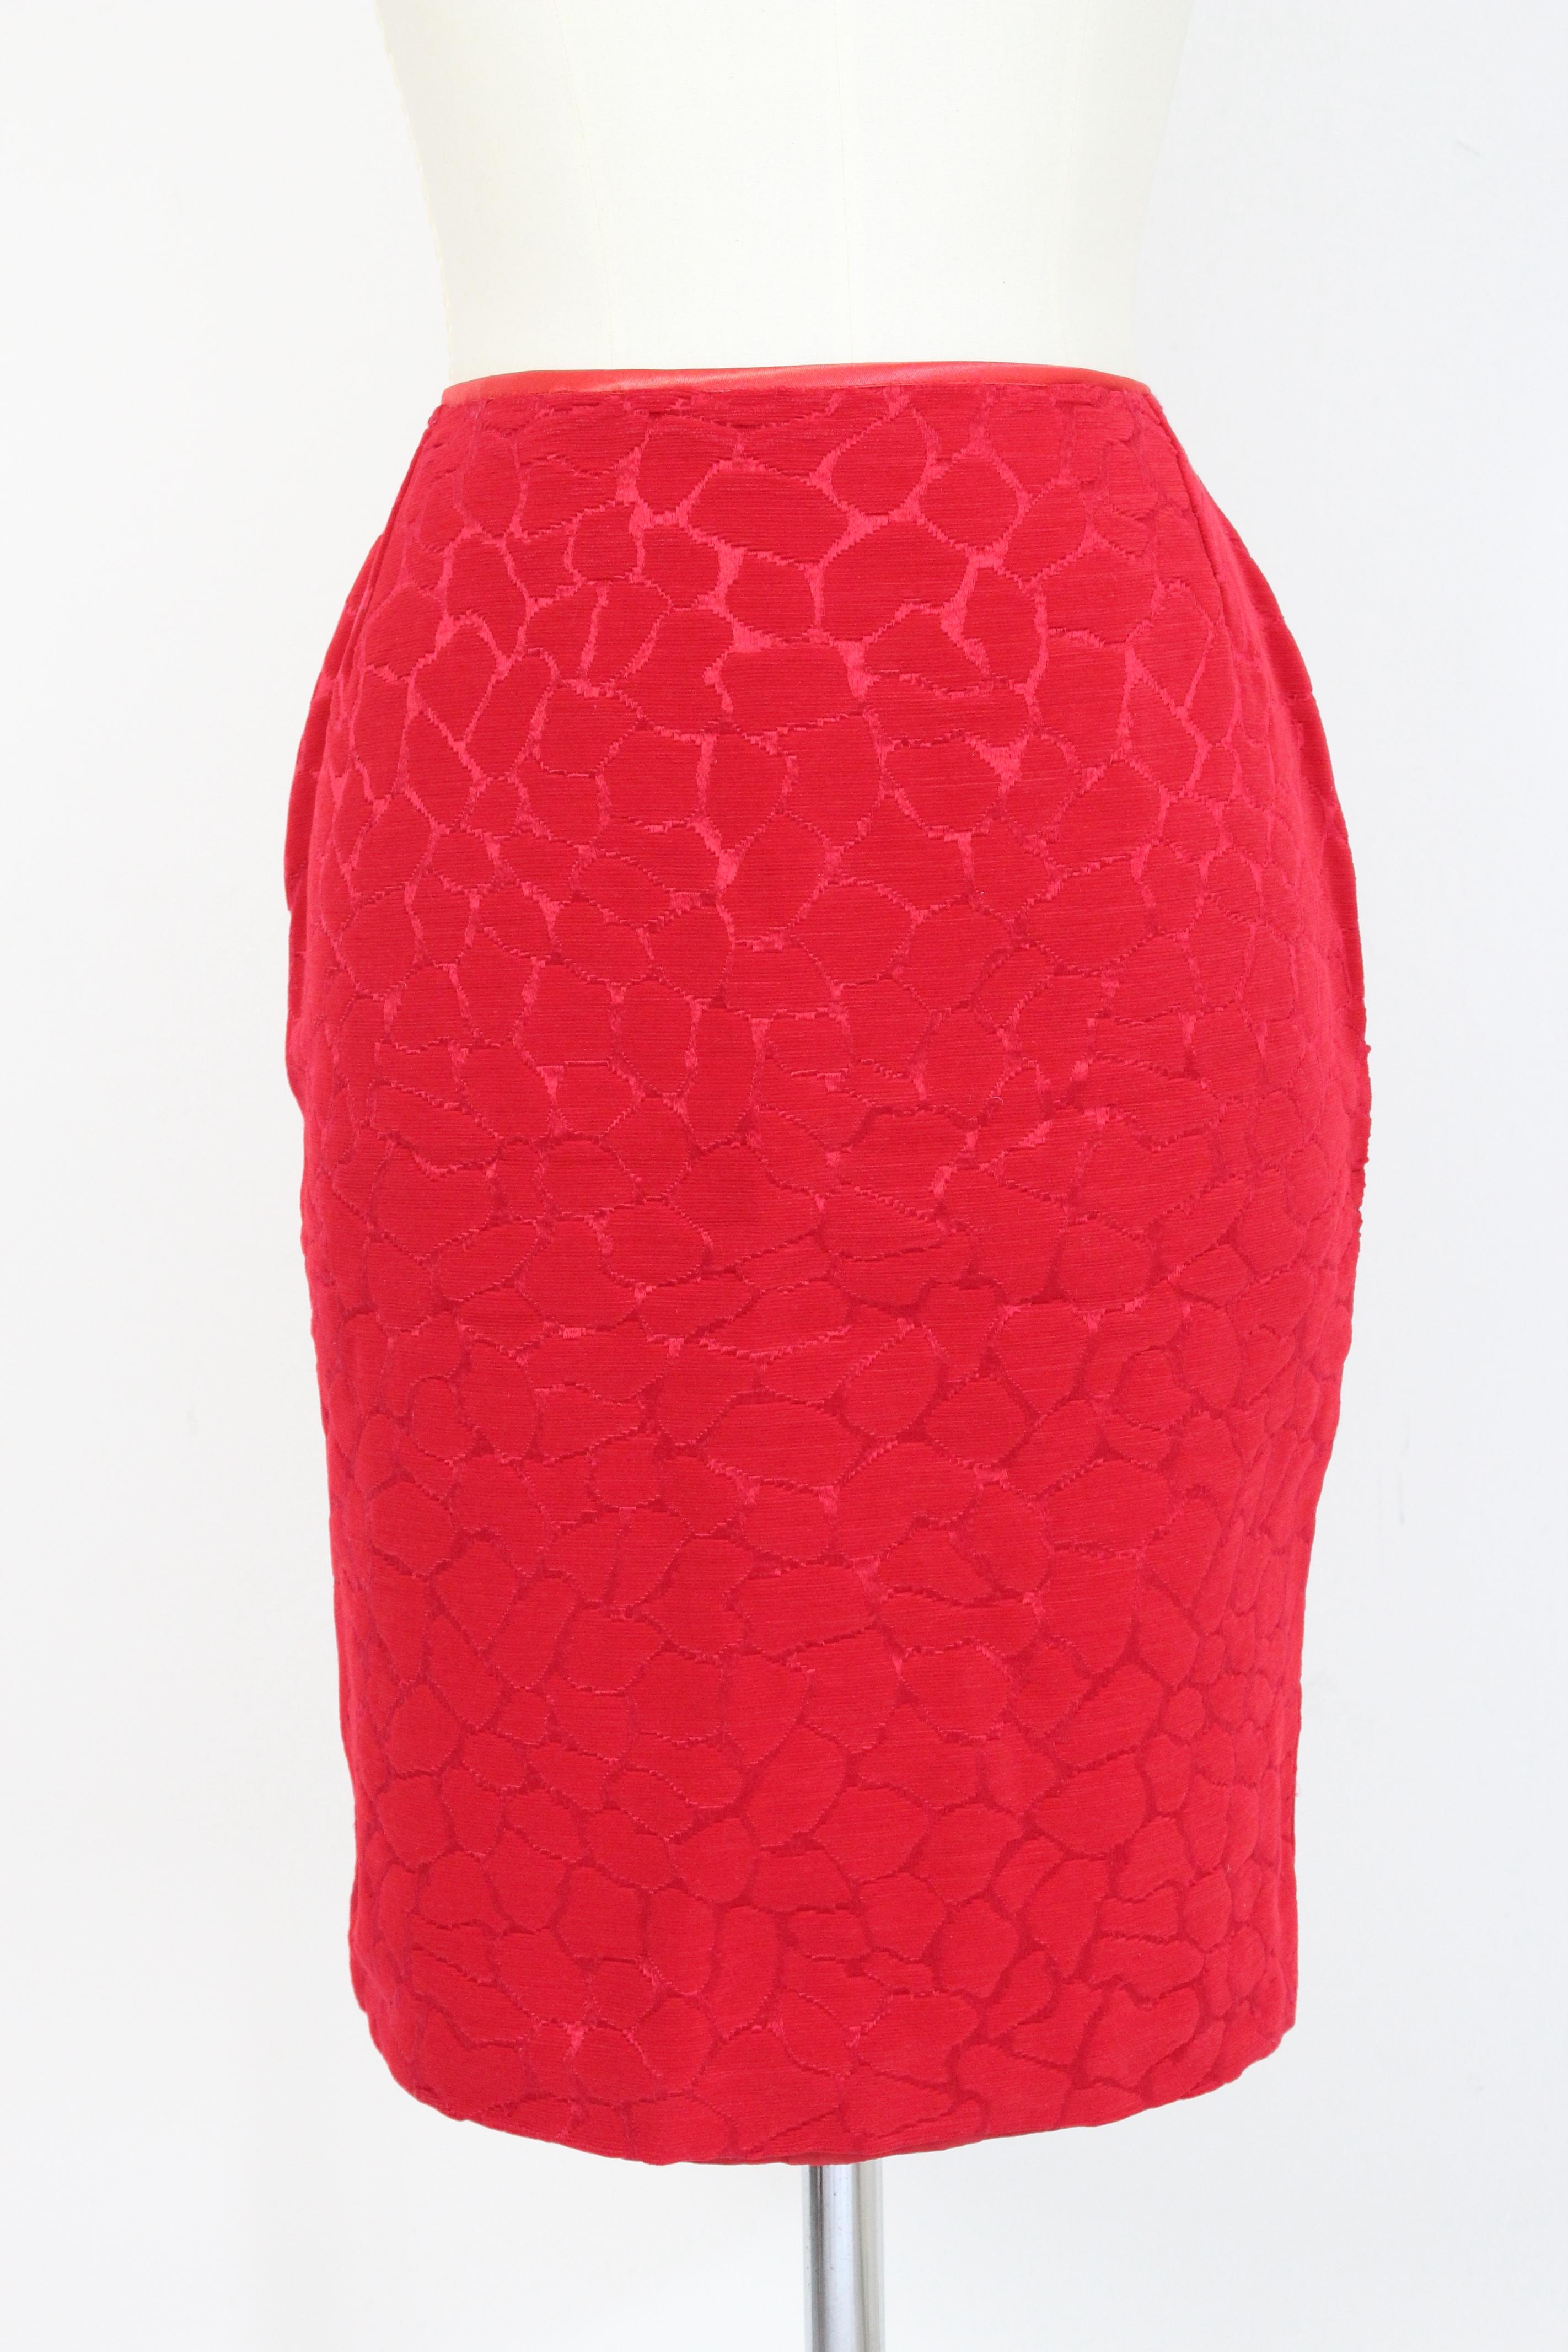 Gai Mattiolo Red Silk Damask Evening Skirt Suit 2